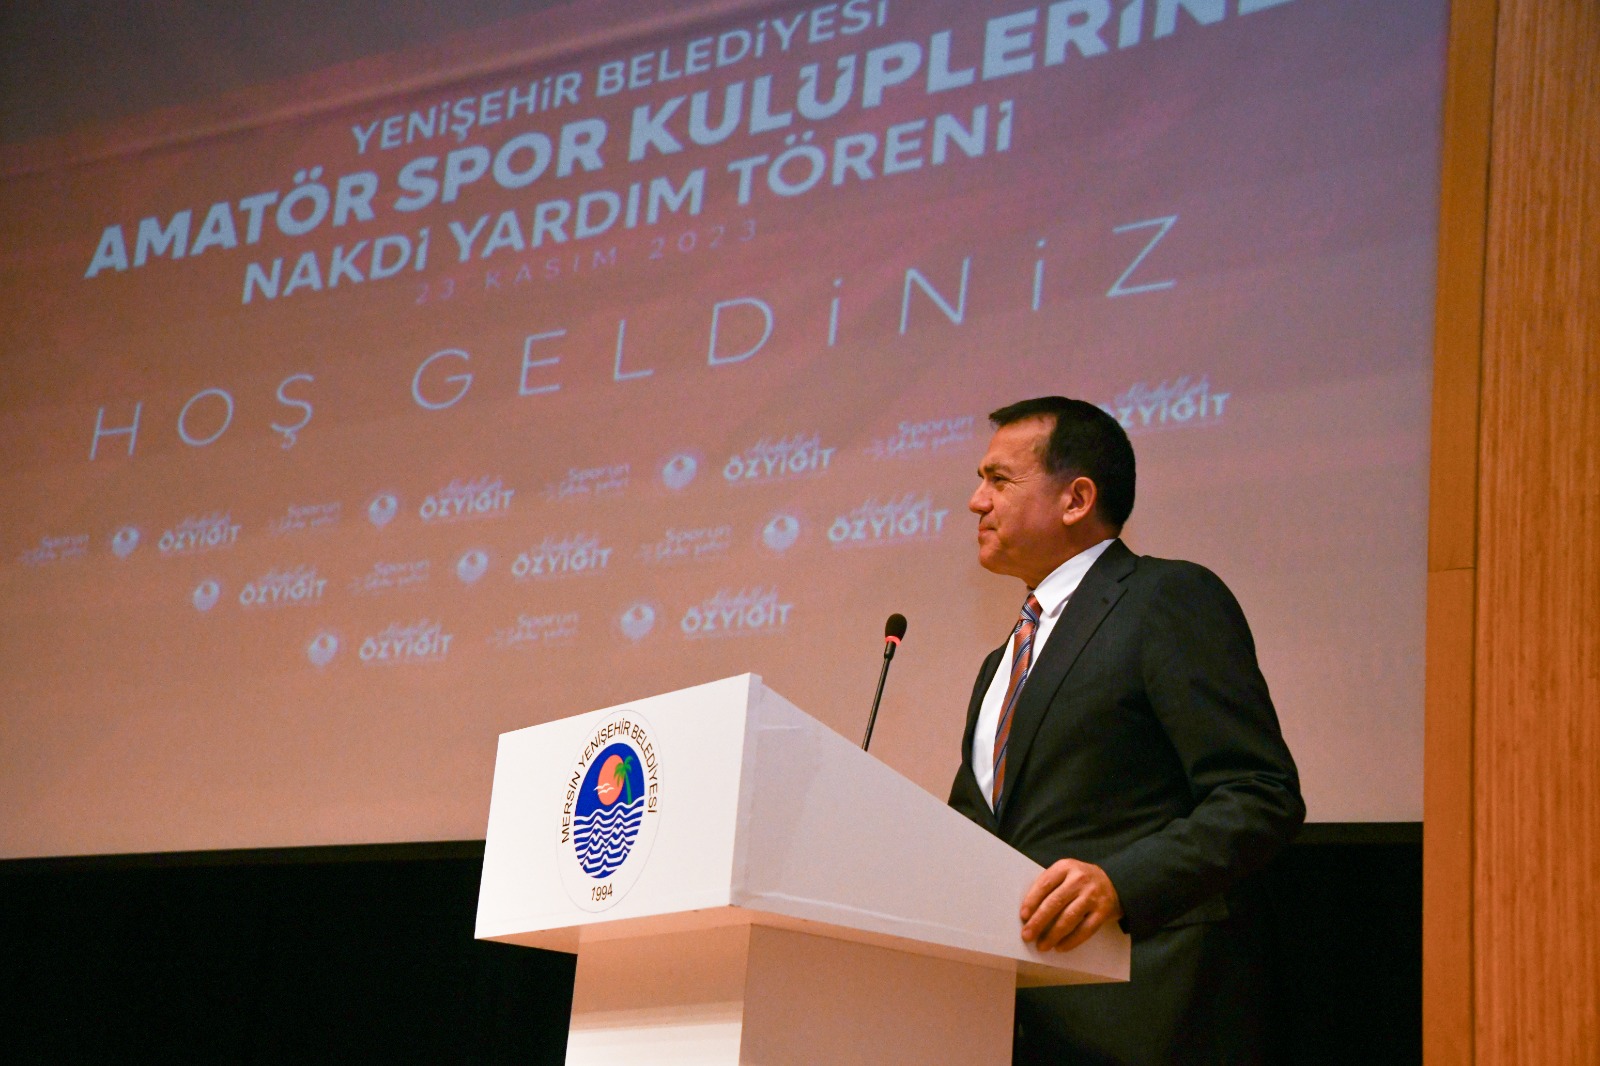 Yenişehir Belediyesinden 51 amatör spor kulübüne 650 bin TL destek (4)